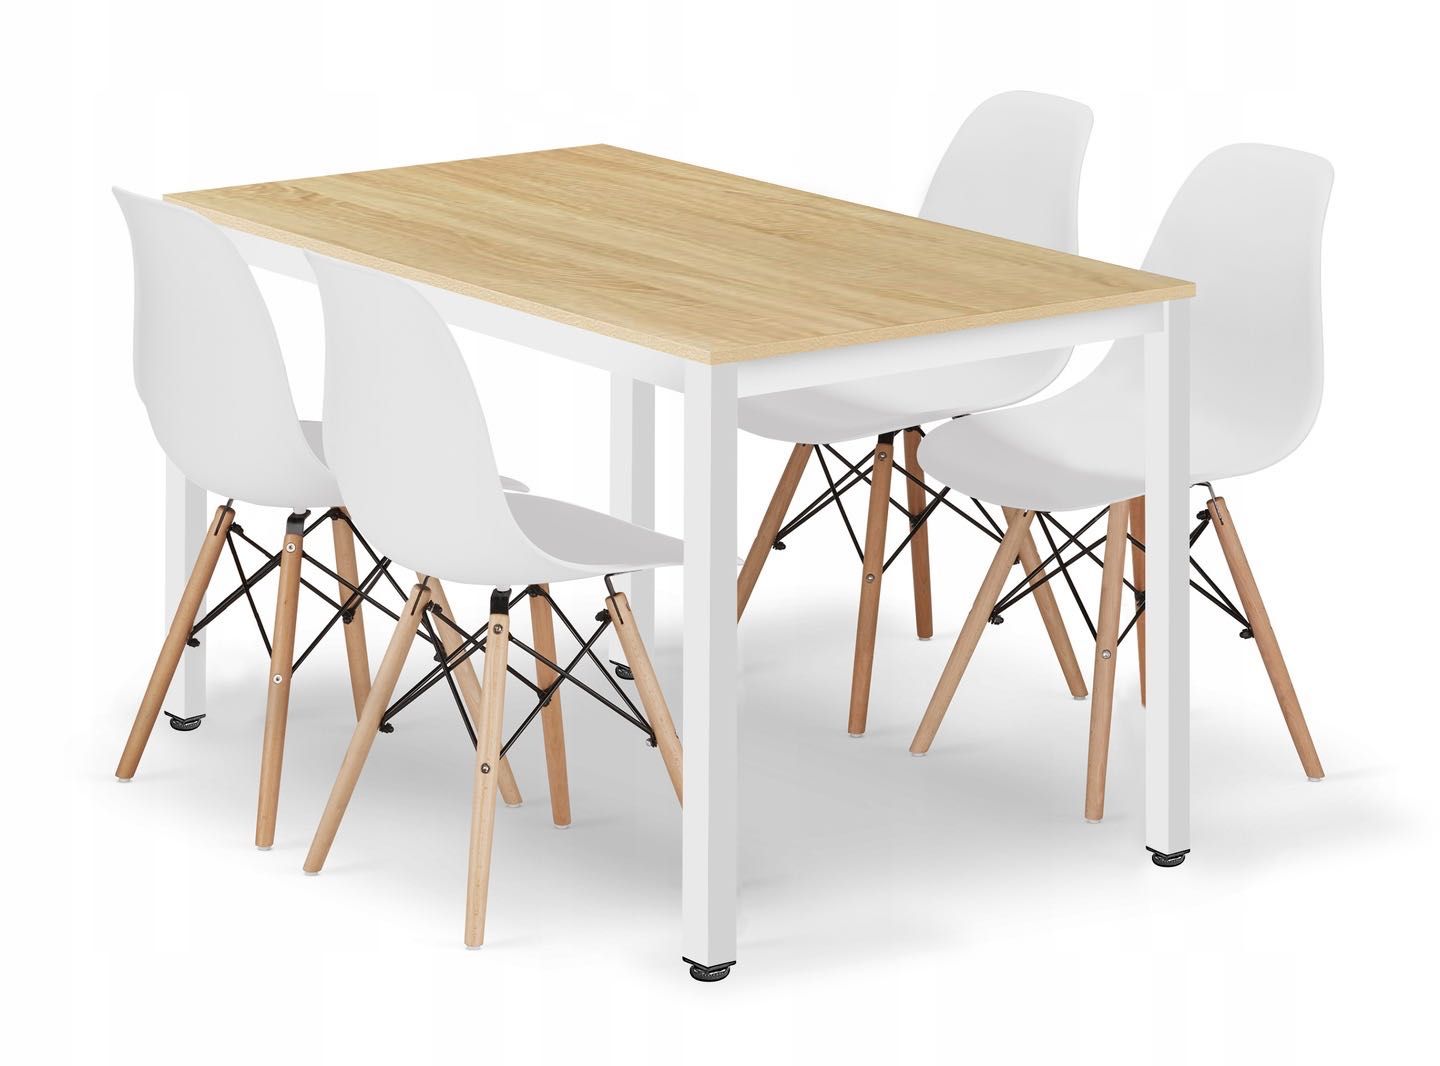 NOWY Ekonomiczny i solidny zestaw stołu z krzesłami - 120 x 60 cm!